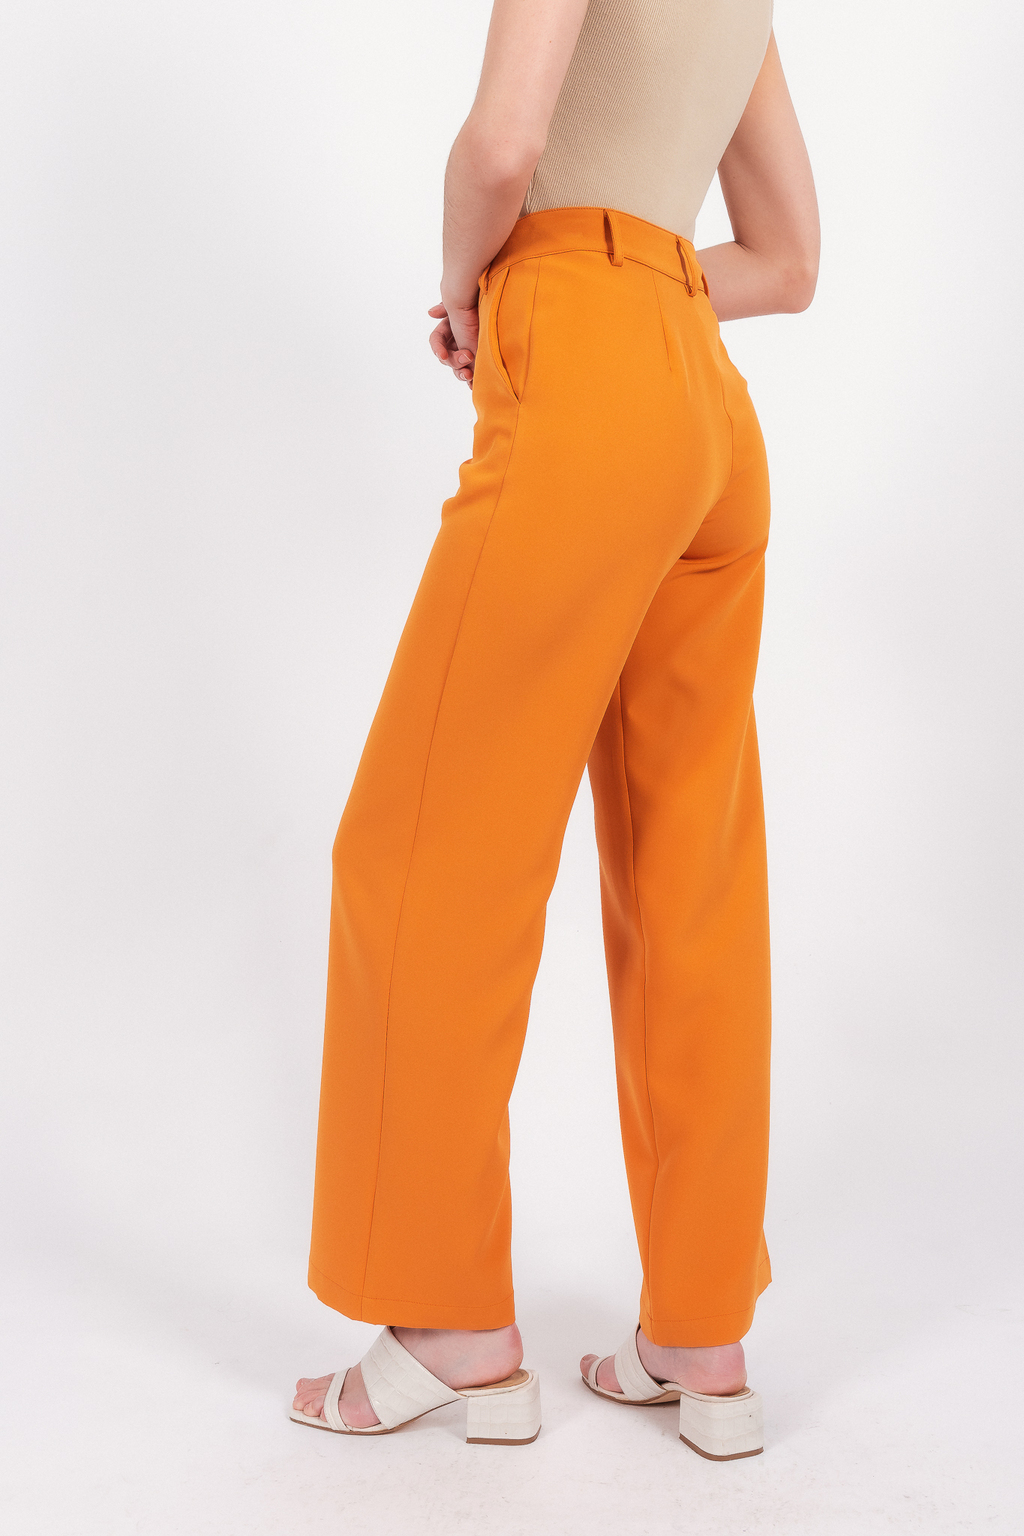 Pantalón Mujer Samantha Naranja